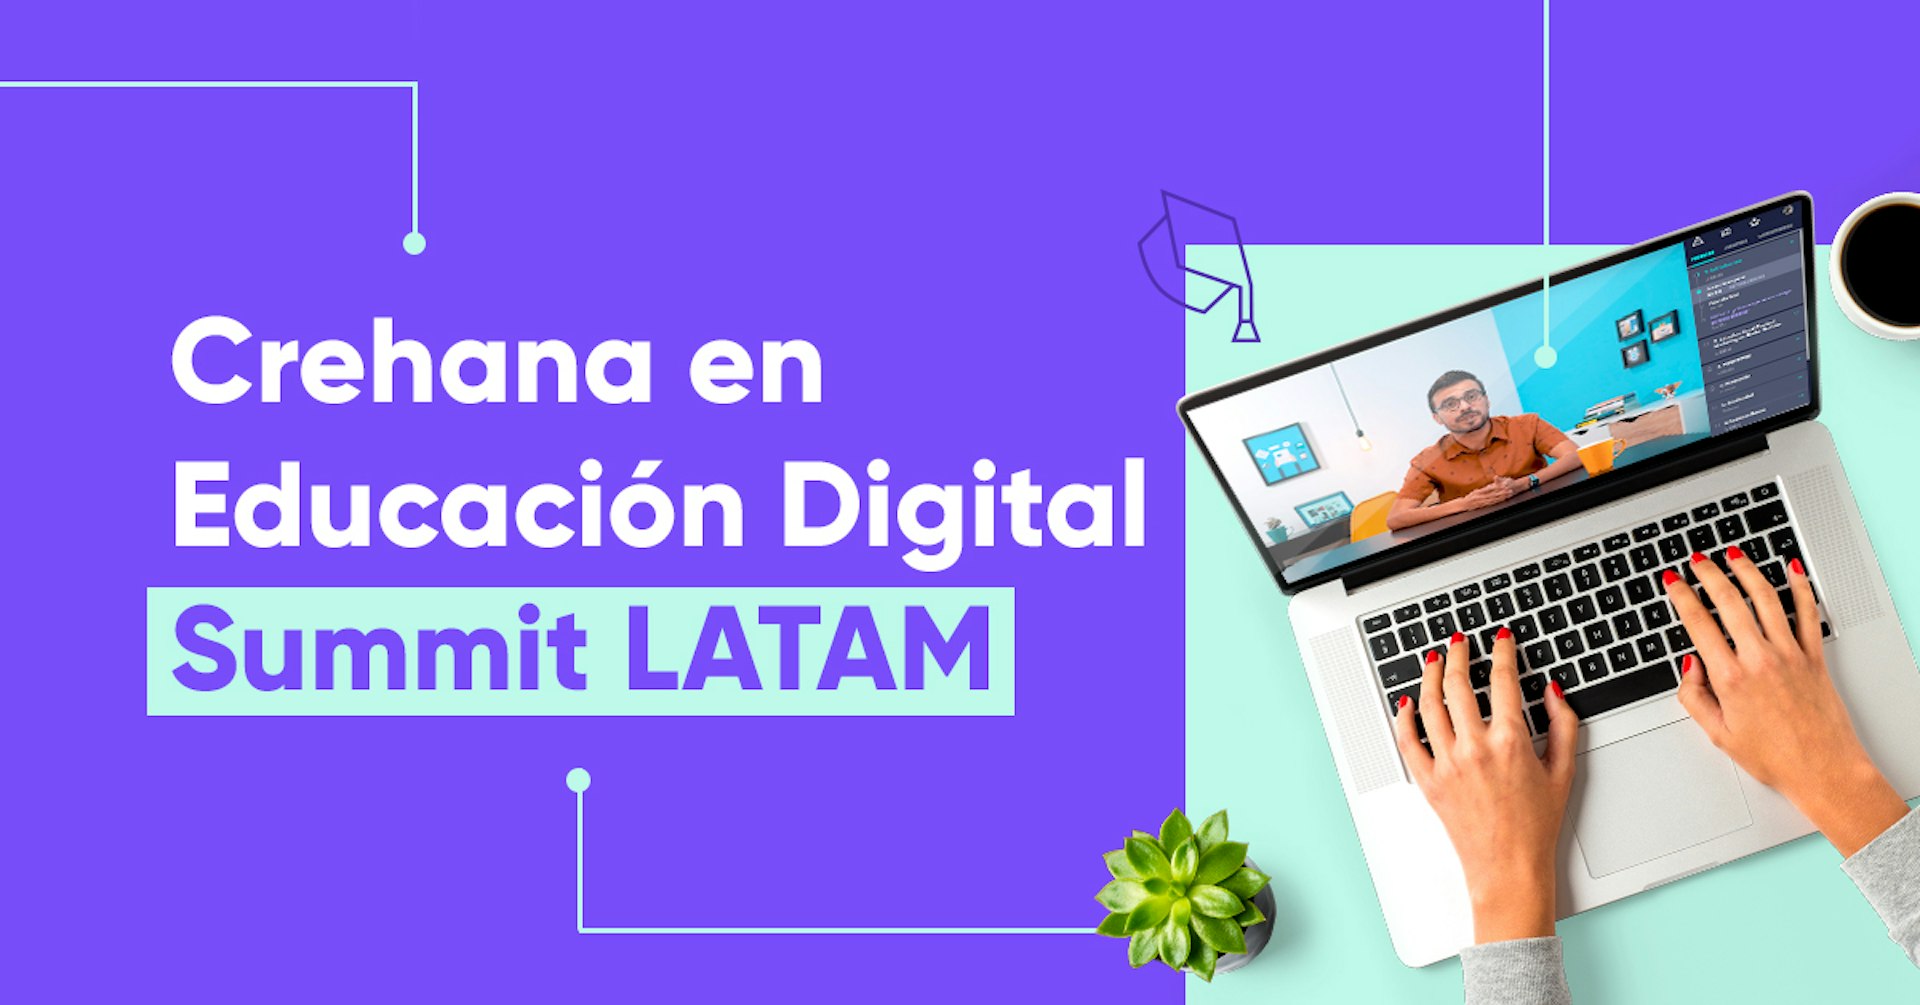 ¡Crehana se une a Educación Digital Summit Latam!